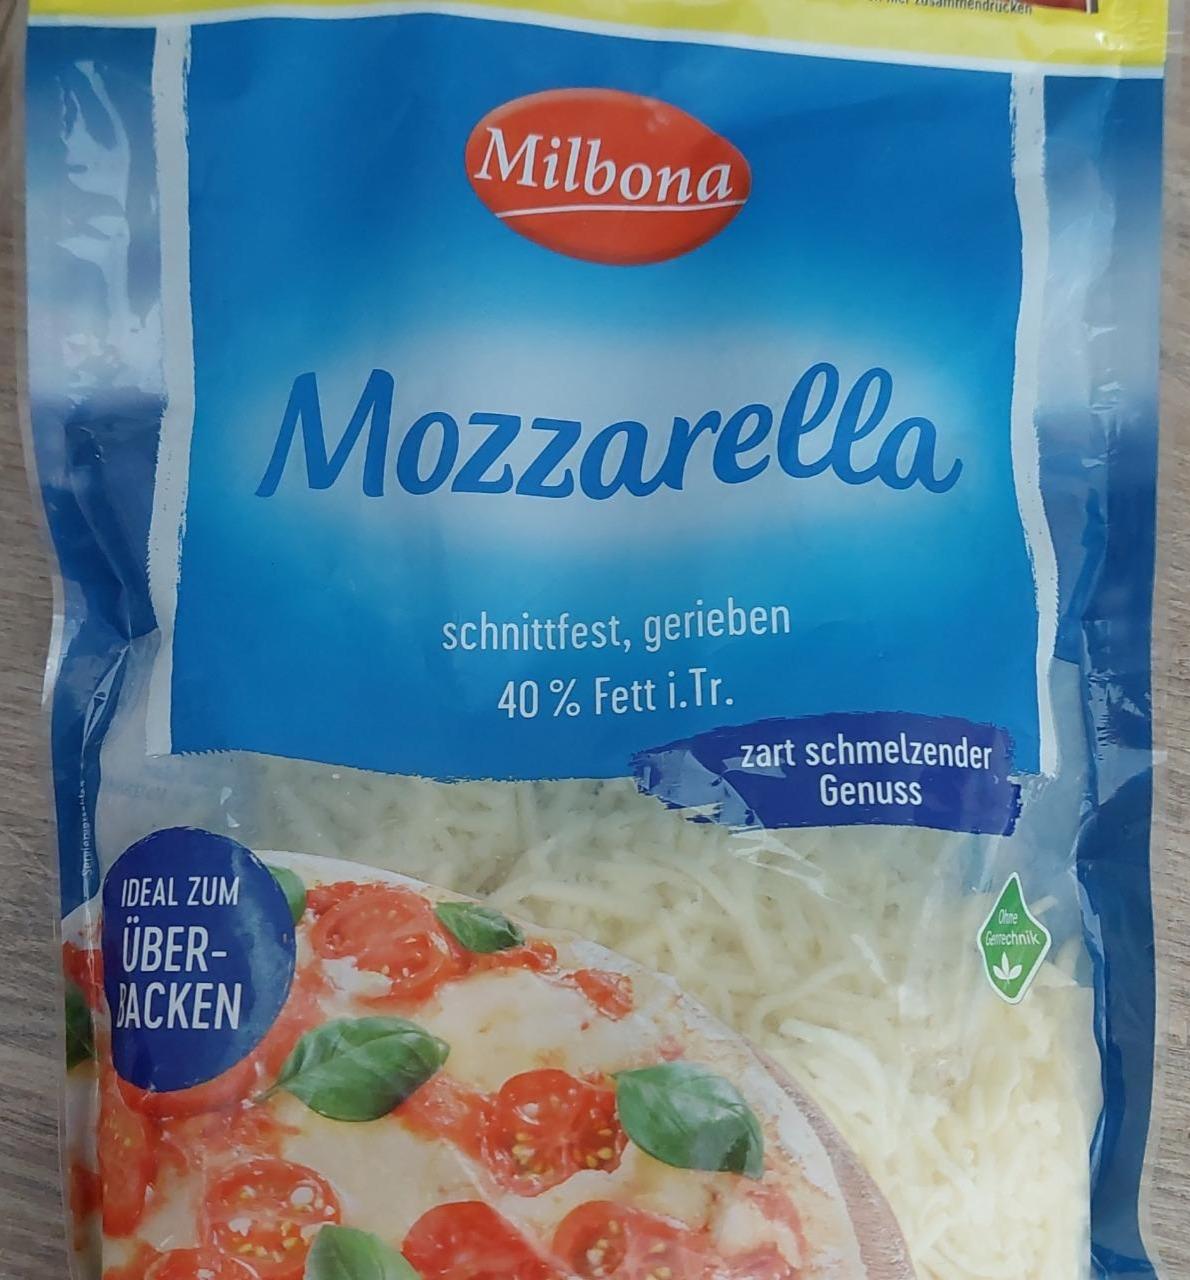 Fotografie - Mozzarella schnittfest, gerieben 40% Fett Milbona